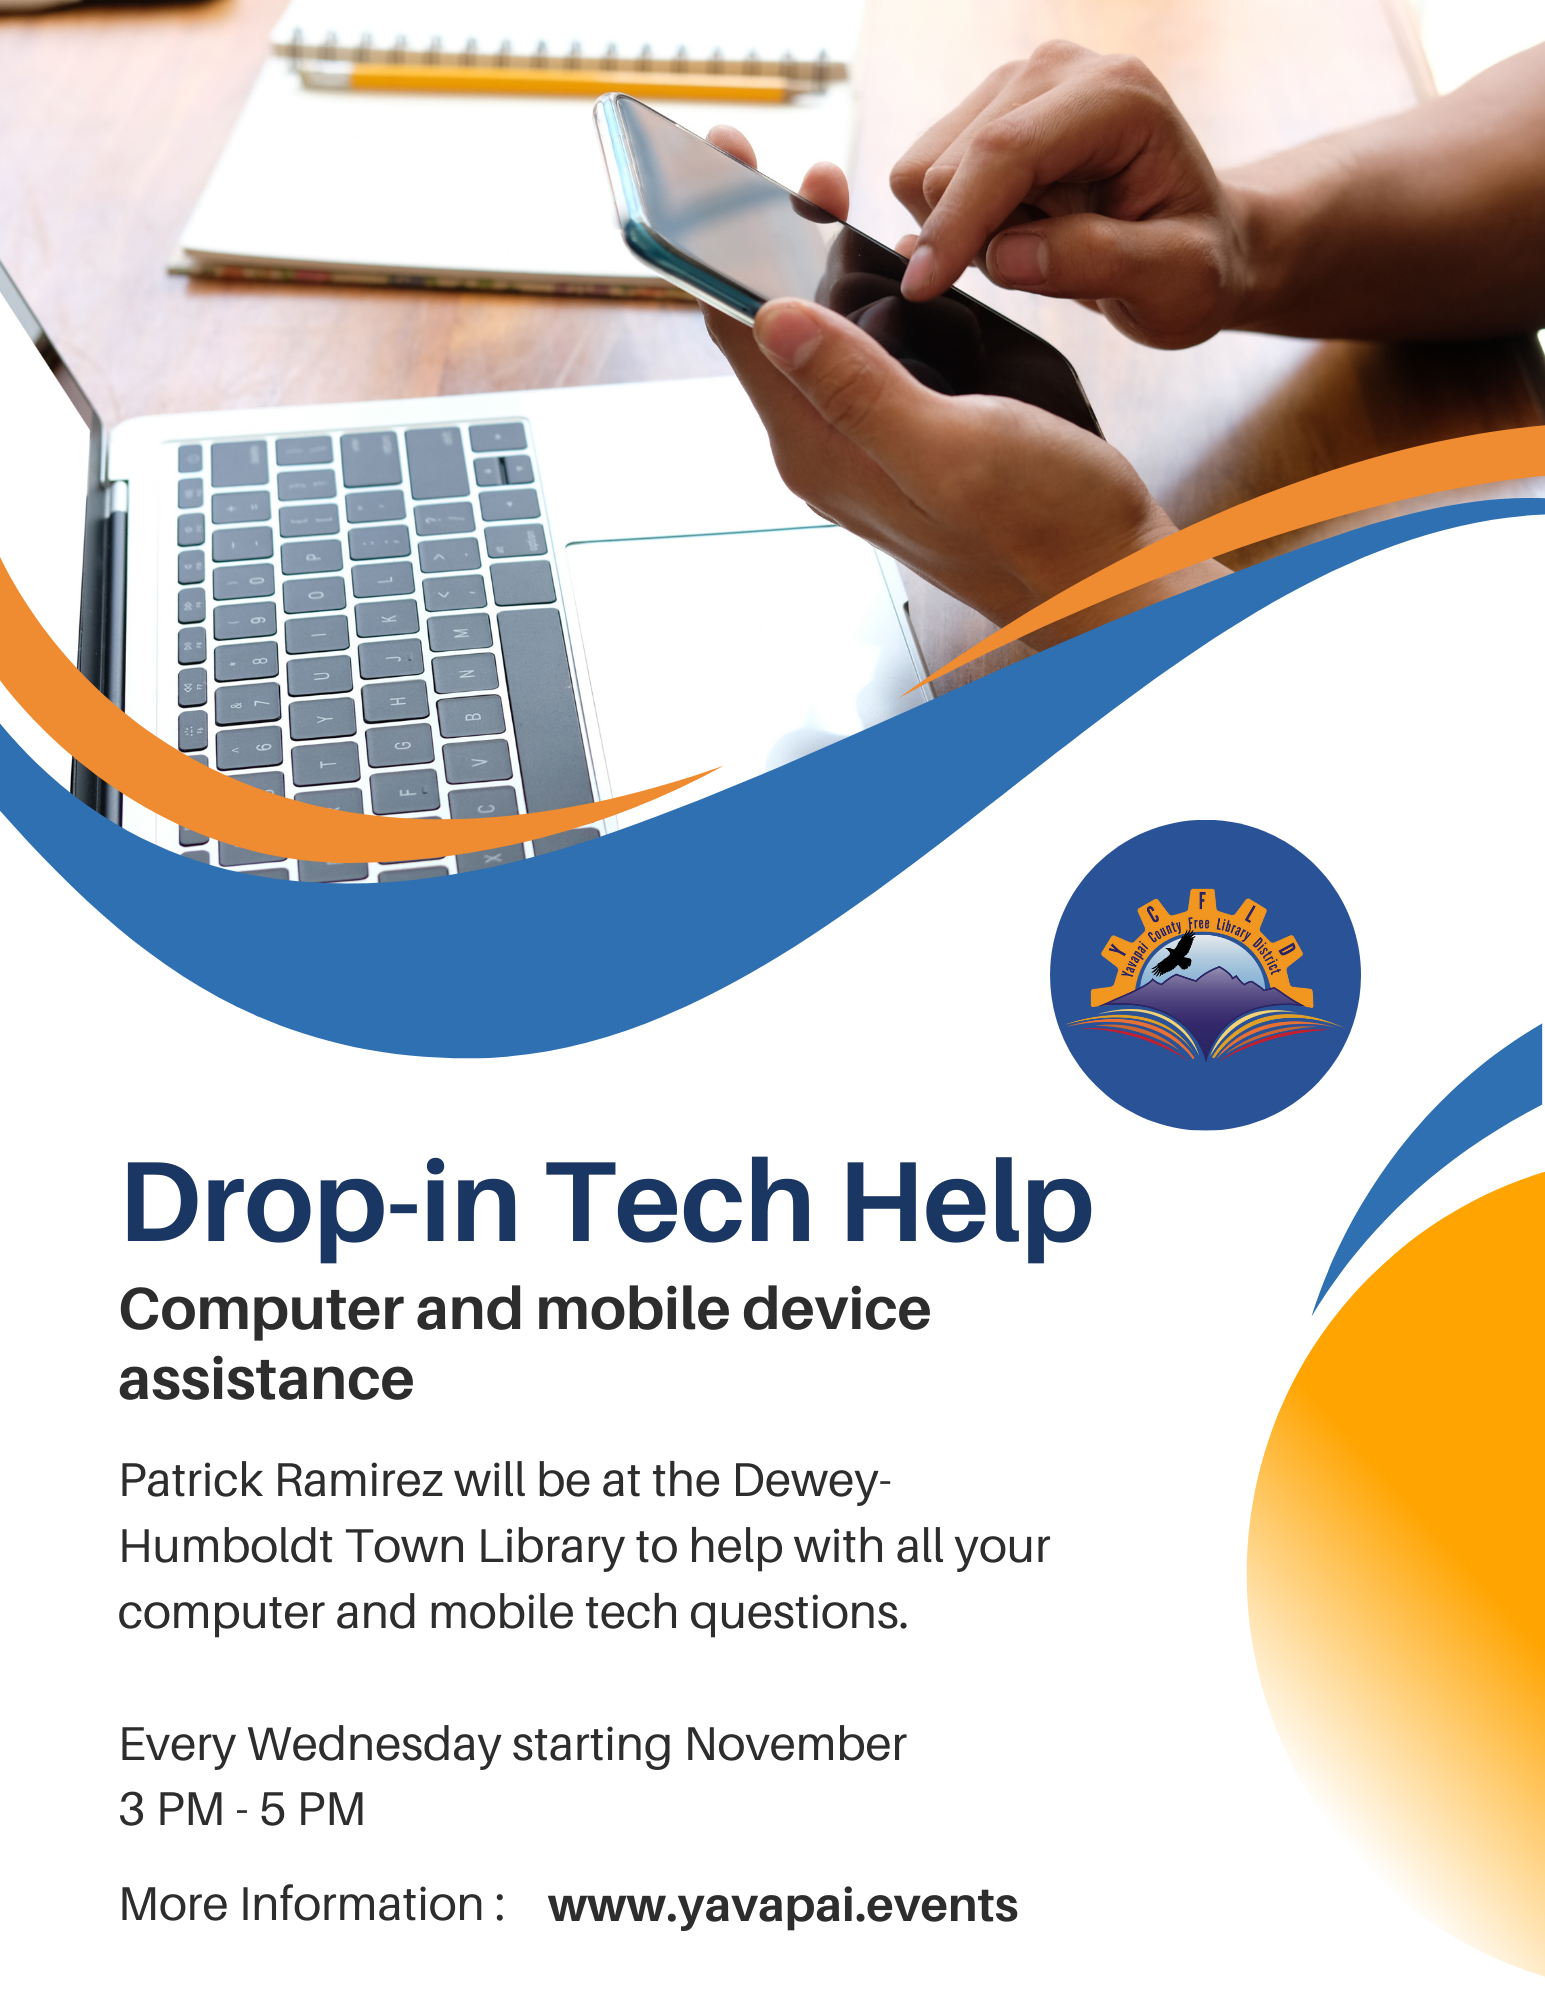 Drop-In Tech Help flyer